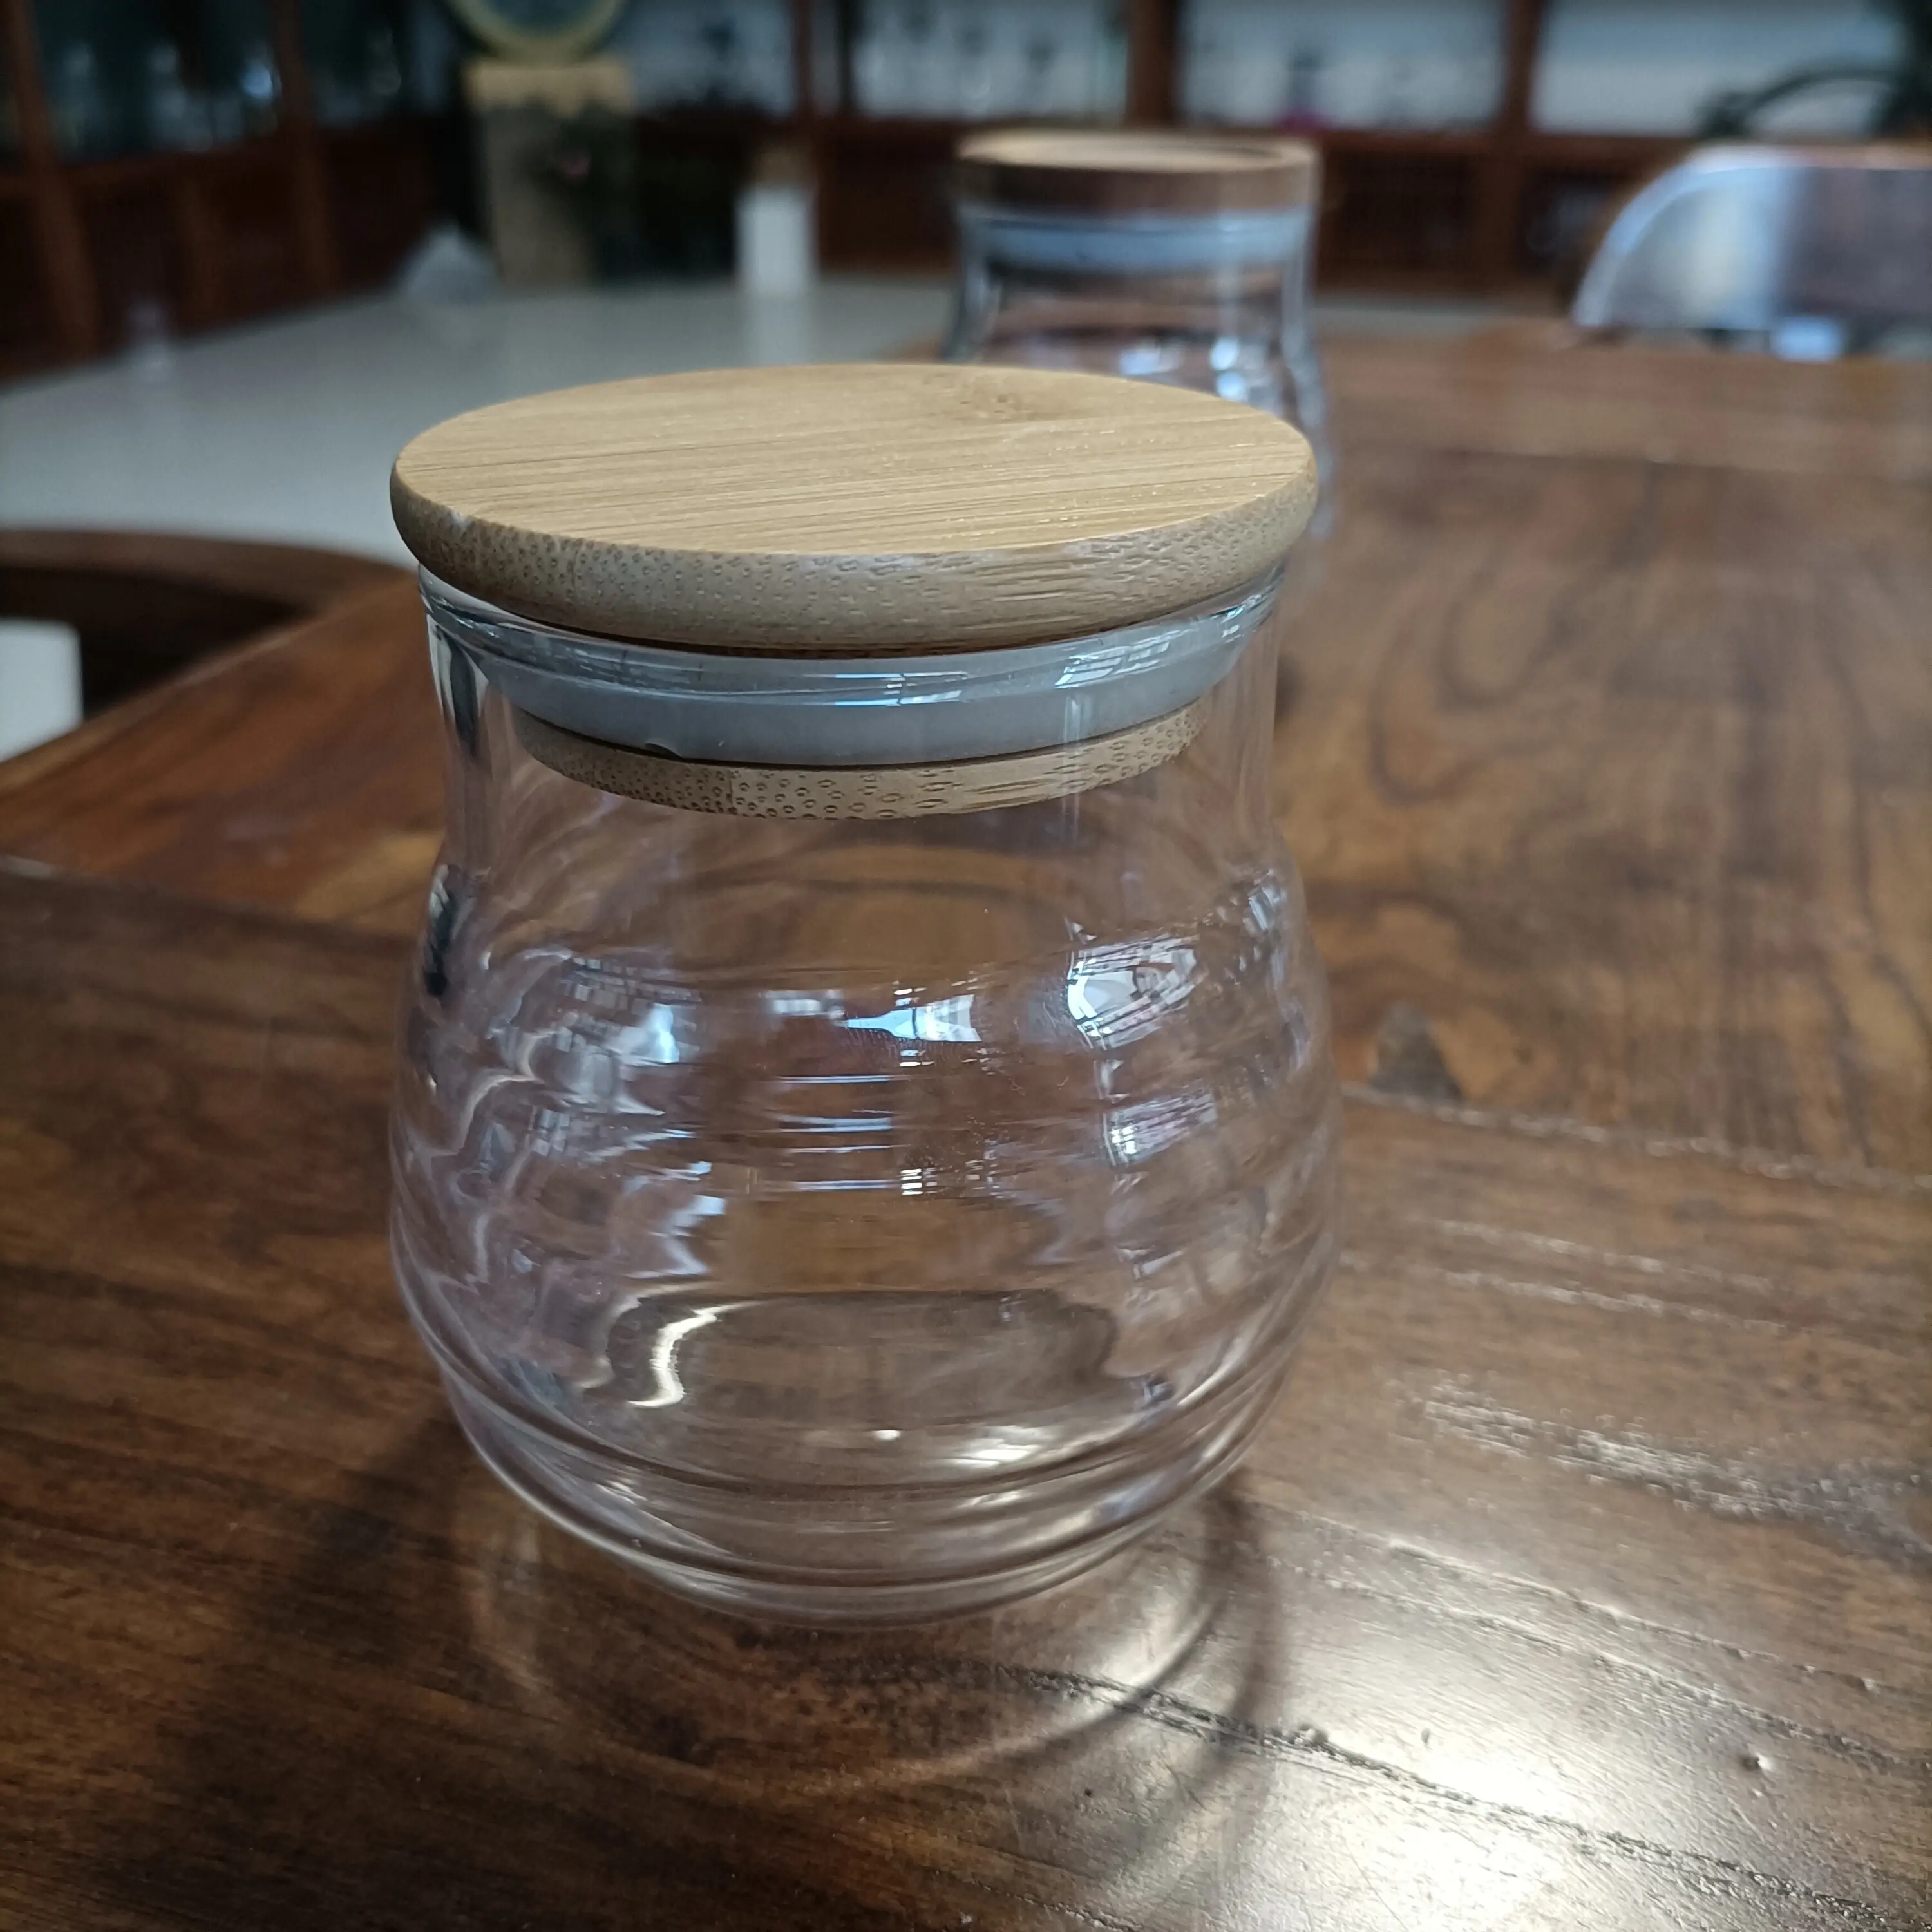 Commercio all'ingrosso cucina rotonda sale di spezie barattolo contenitore di vetro vasetti di condimento con coperchio in legno coperchio di bambù